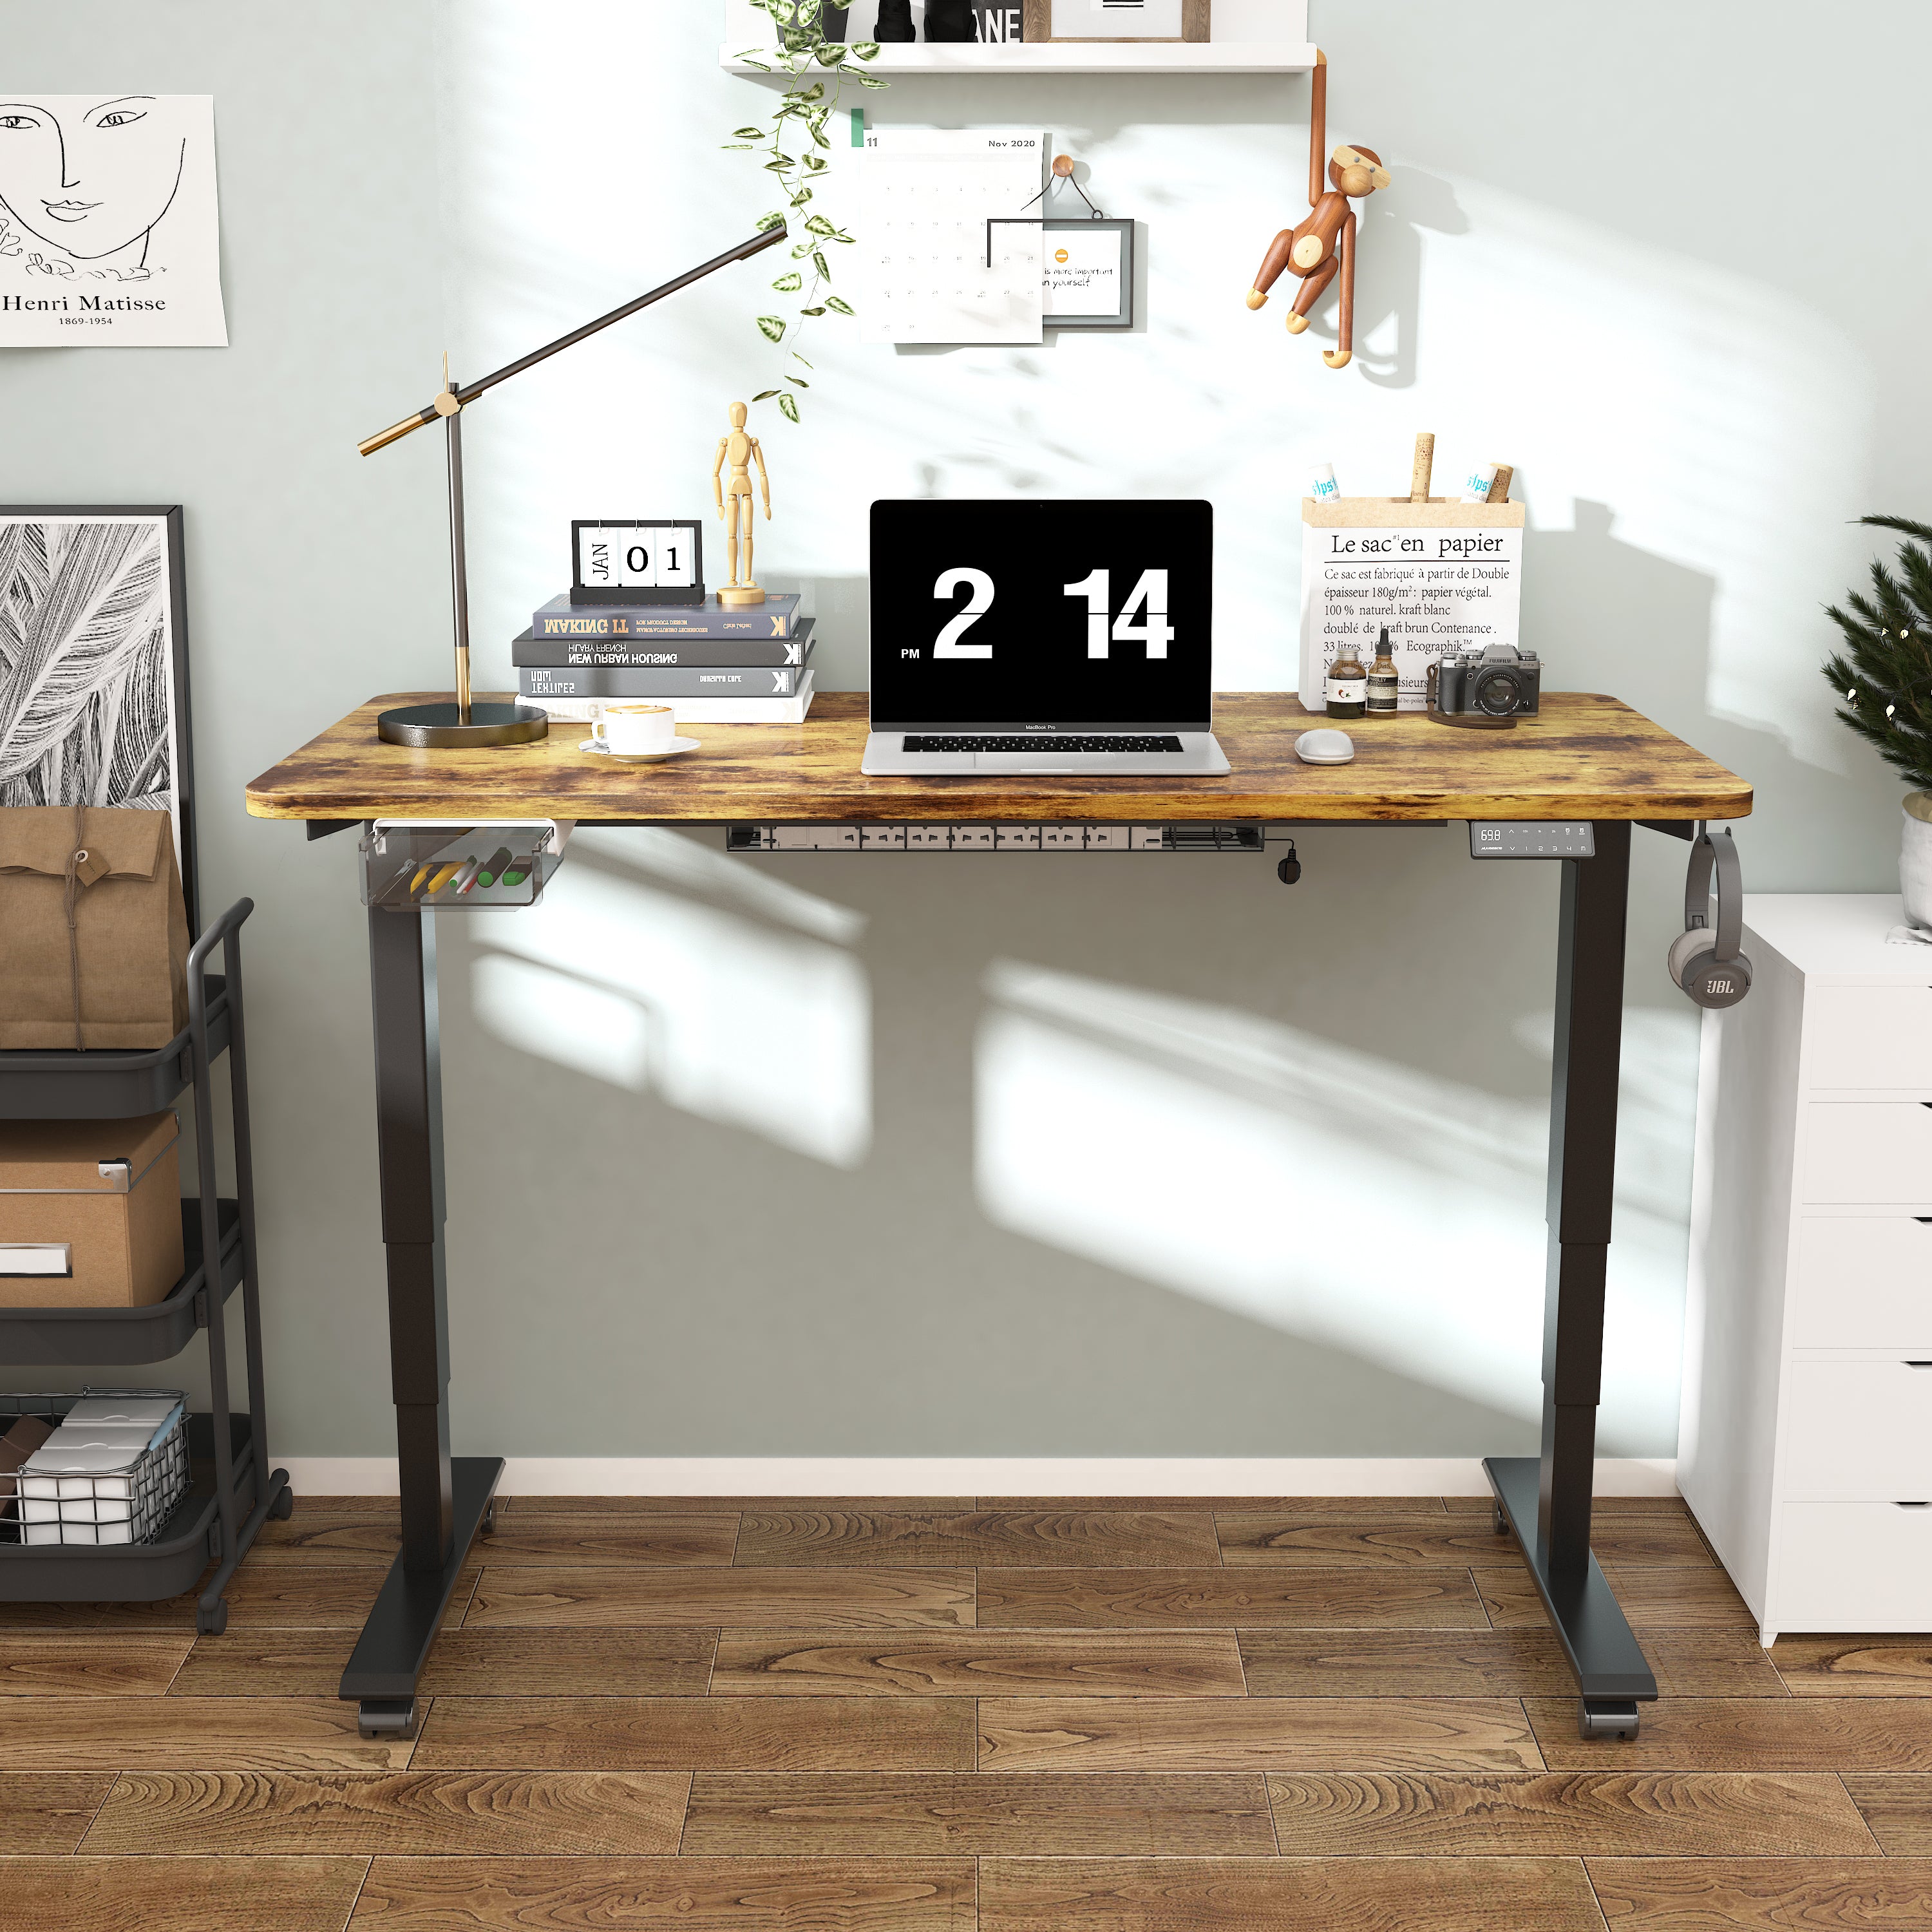 Maidesite S2 Pro Plus - Elektrisch Höhenverstellbarer Schreibtisch 160x80 cm